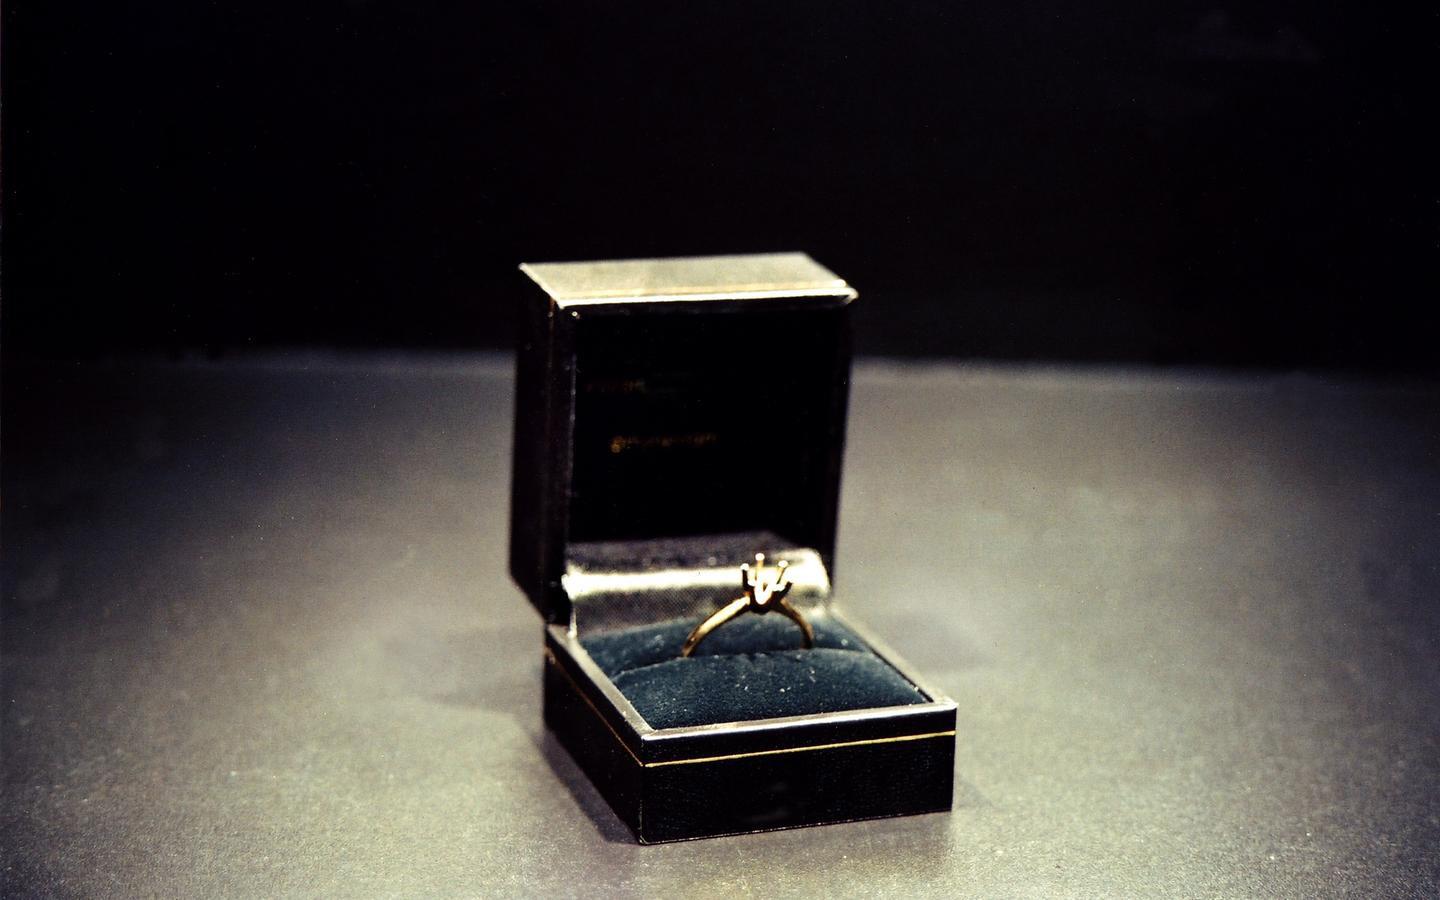 Konstnären Jill Magid säljer en diamantring där hon själv ska bli diamanten i mitten.